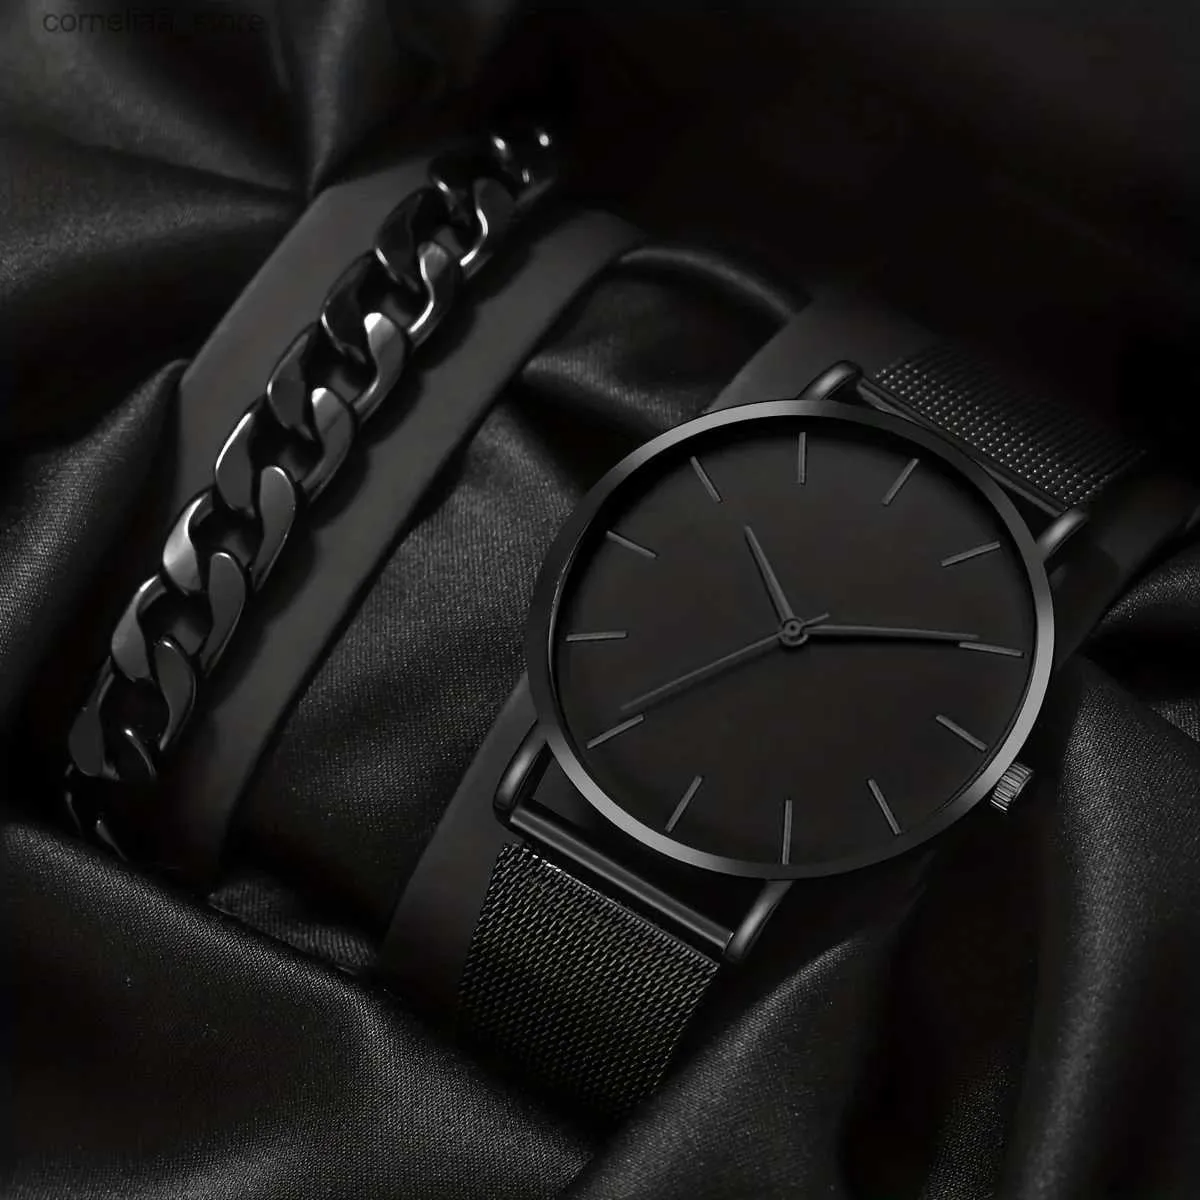 Altri orologi 1 pezzo cinturino in acciaio inossidabile da uomo affascinante quadrante rotondo decorativo al quarzo braccialetto 1 pezzo per l'uso quotidiano Y240316